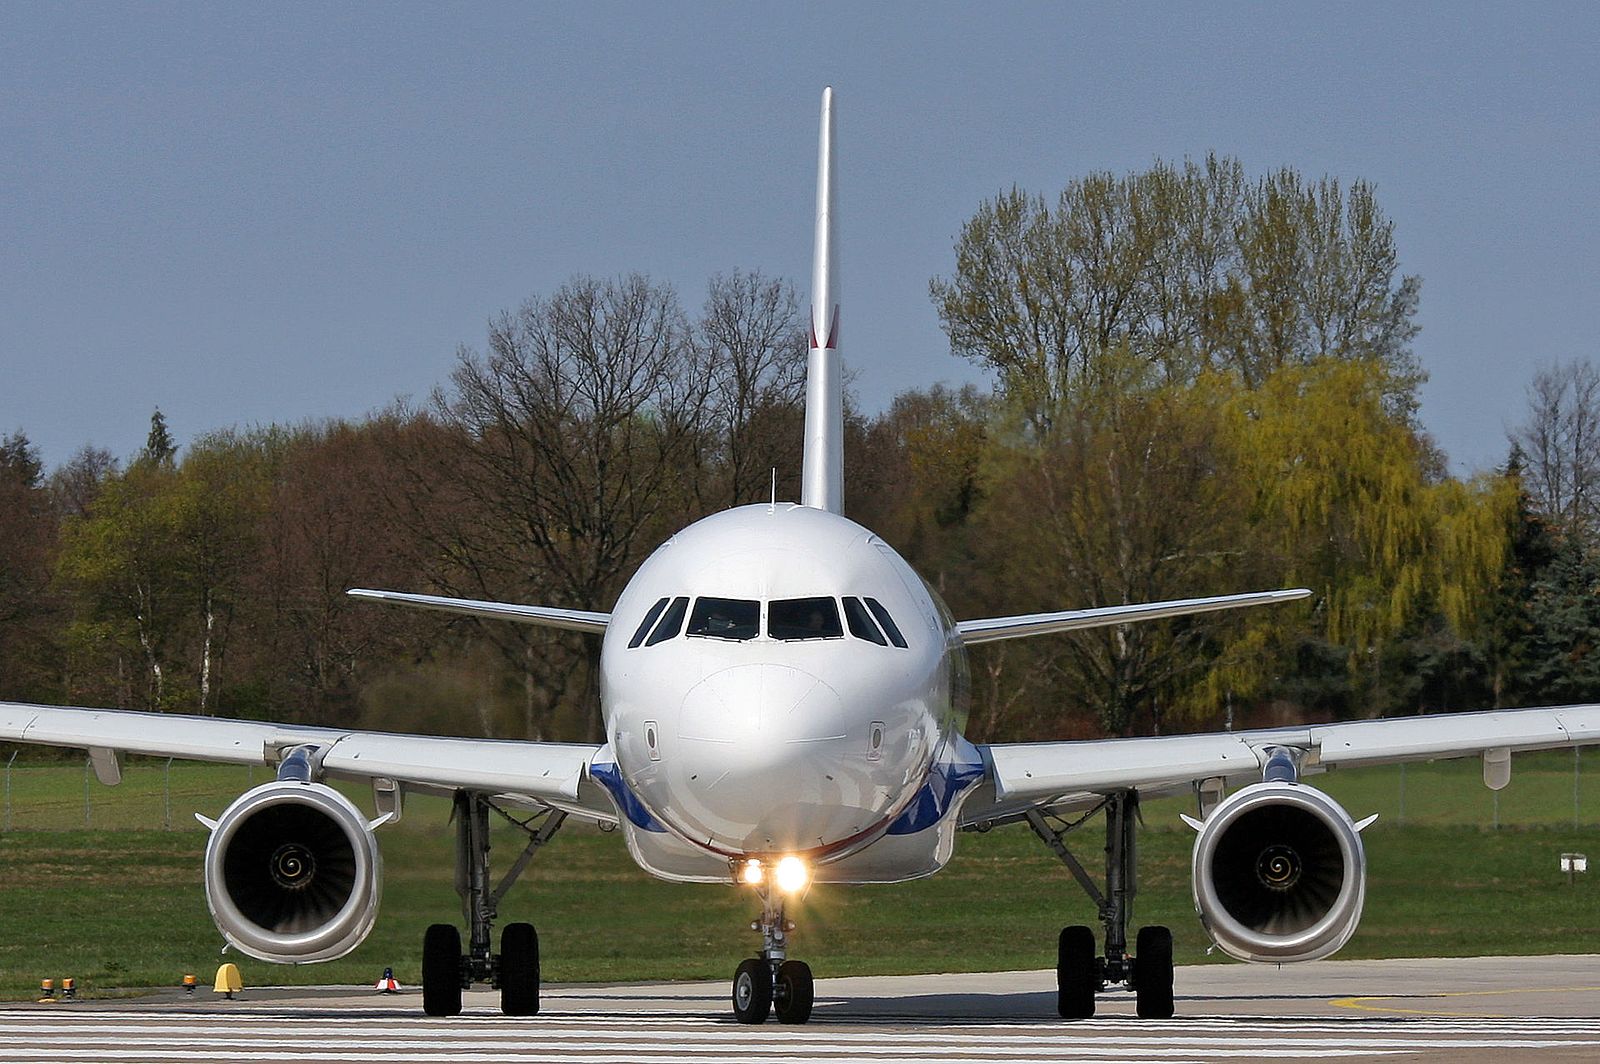 Saiba qual é o A320 mais antigo em operação atualmente